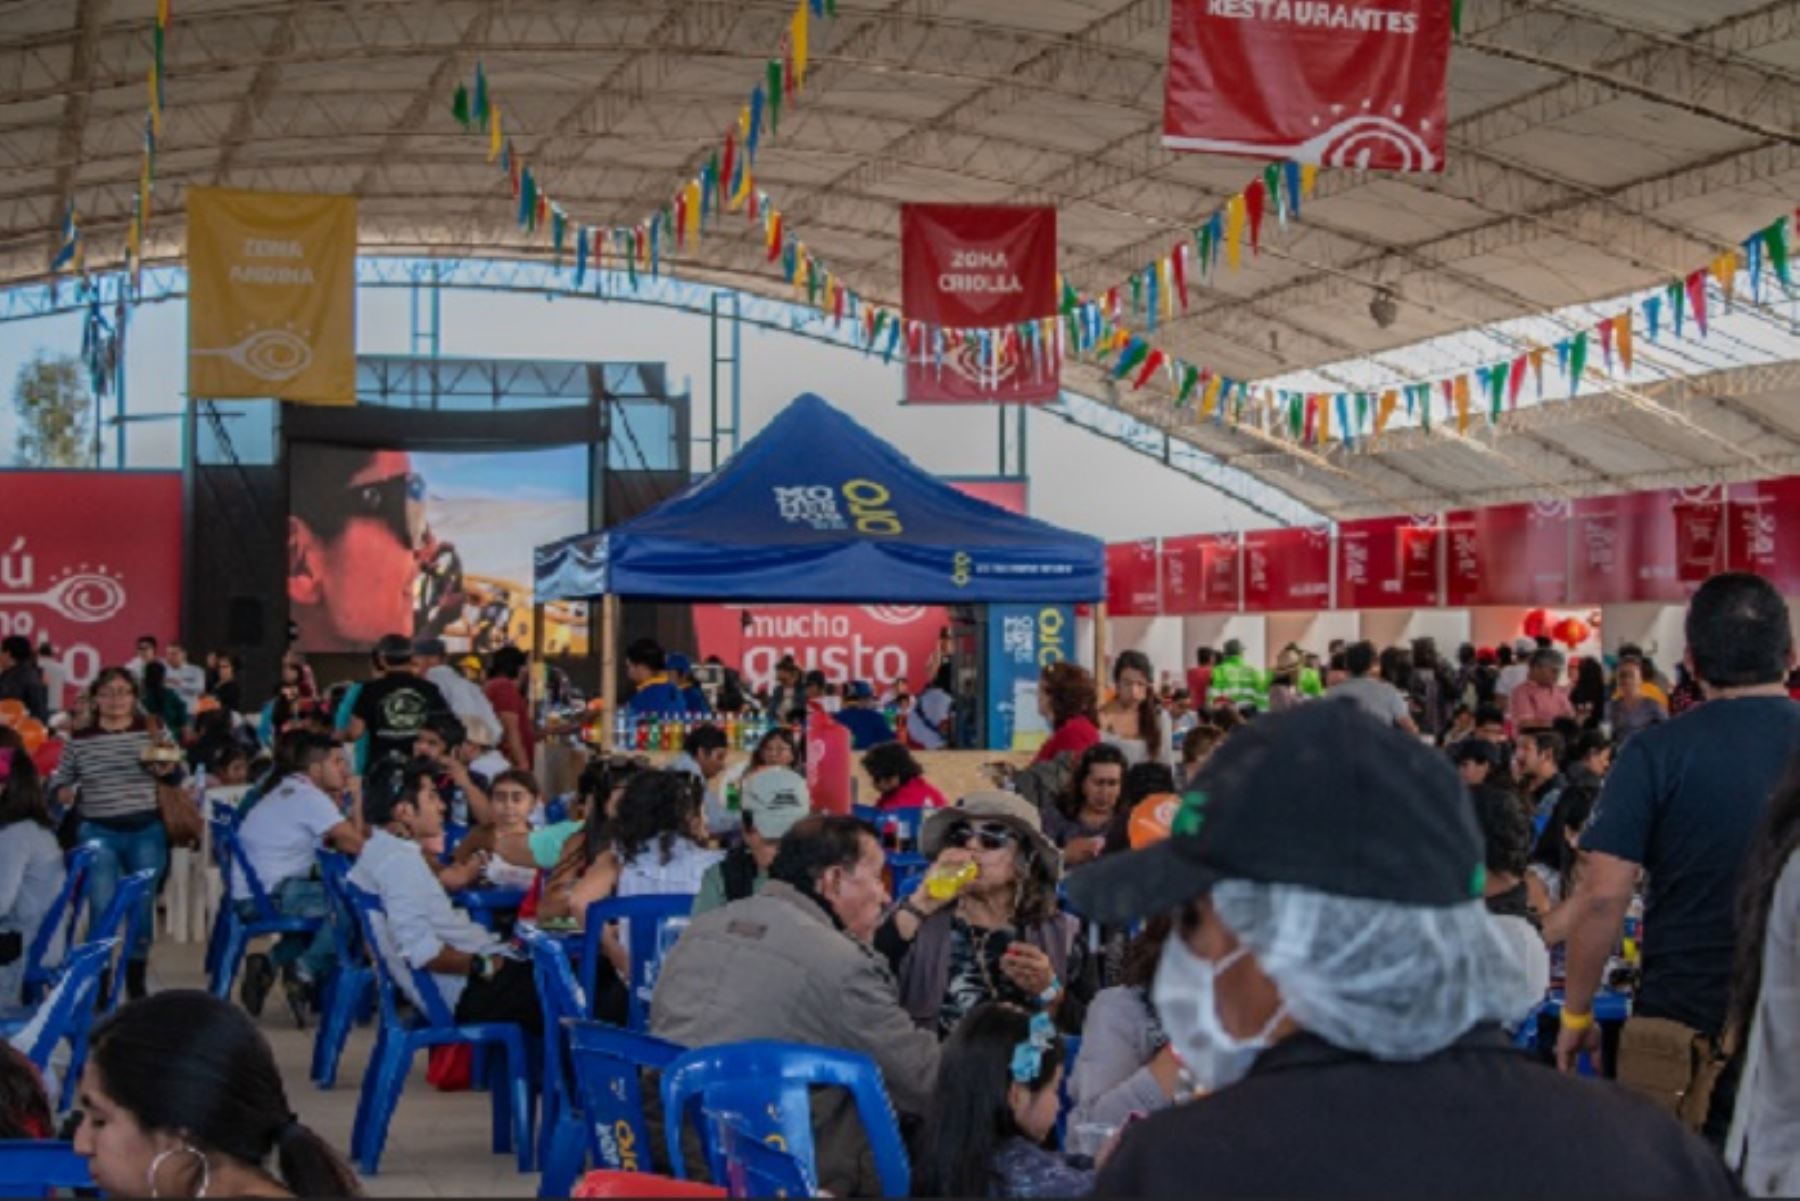 La feria gastronómica Perú, Mucho Gusto en Tacna espera captar más de 27,000 asistentes; los organizadores evalúan el escenario donde se desarrollará. Foto: ANDINA/Difusión